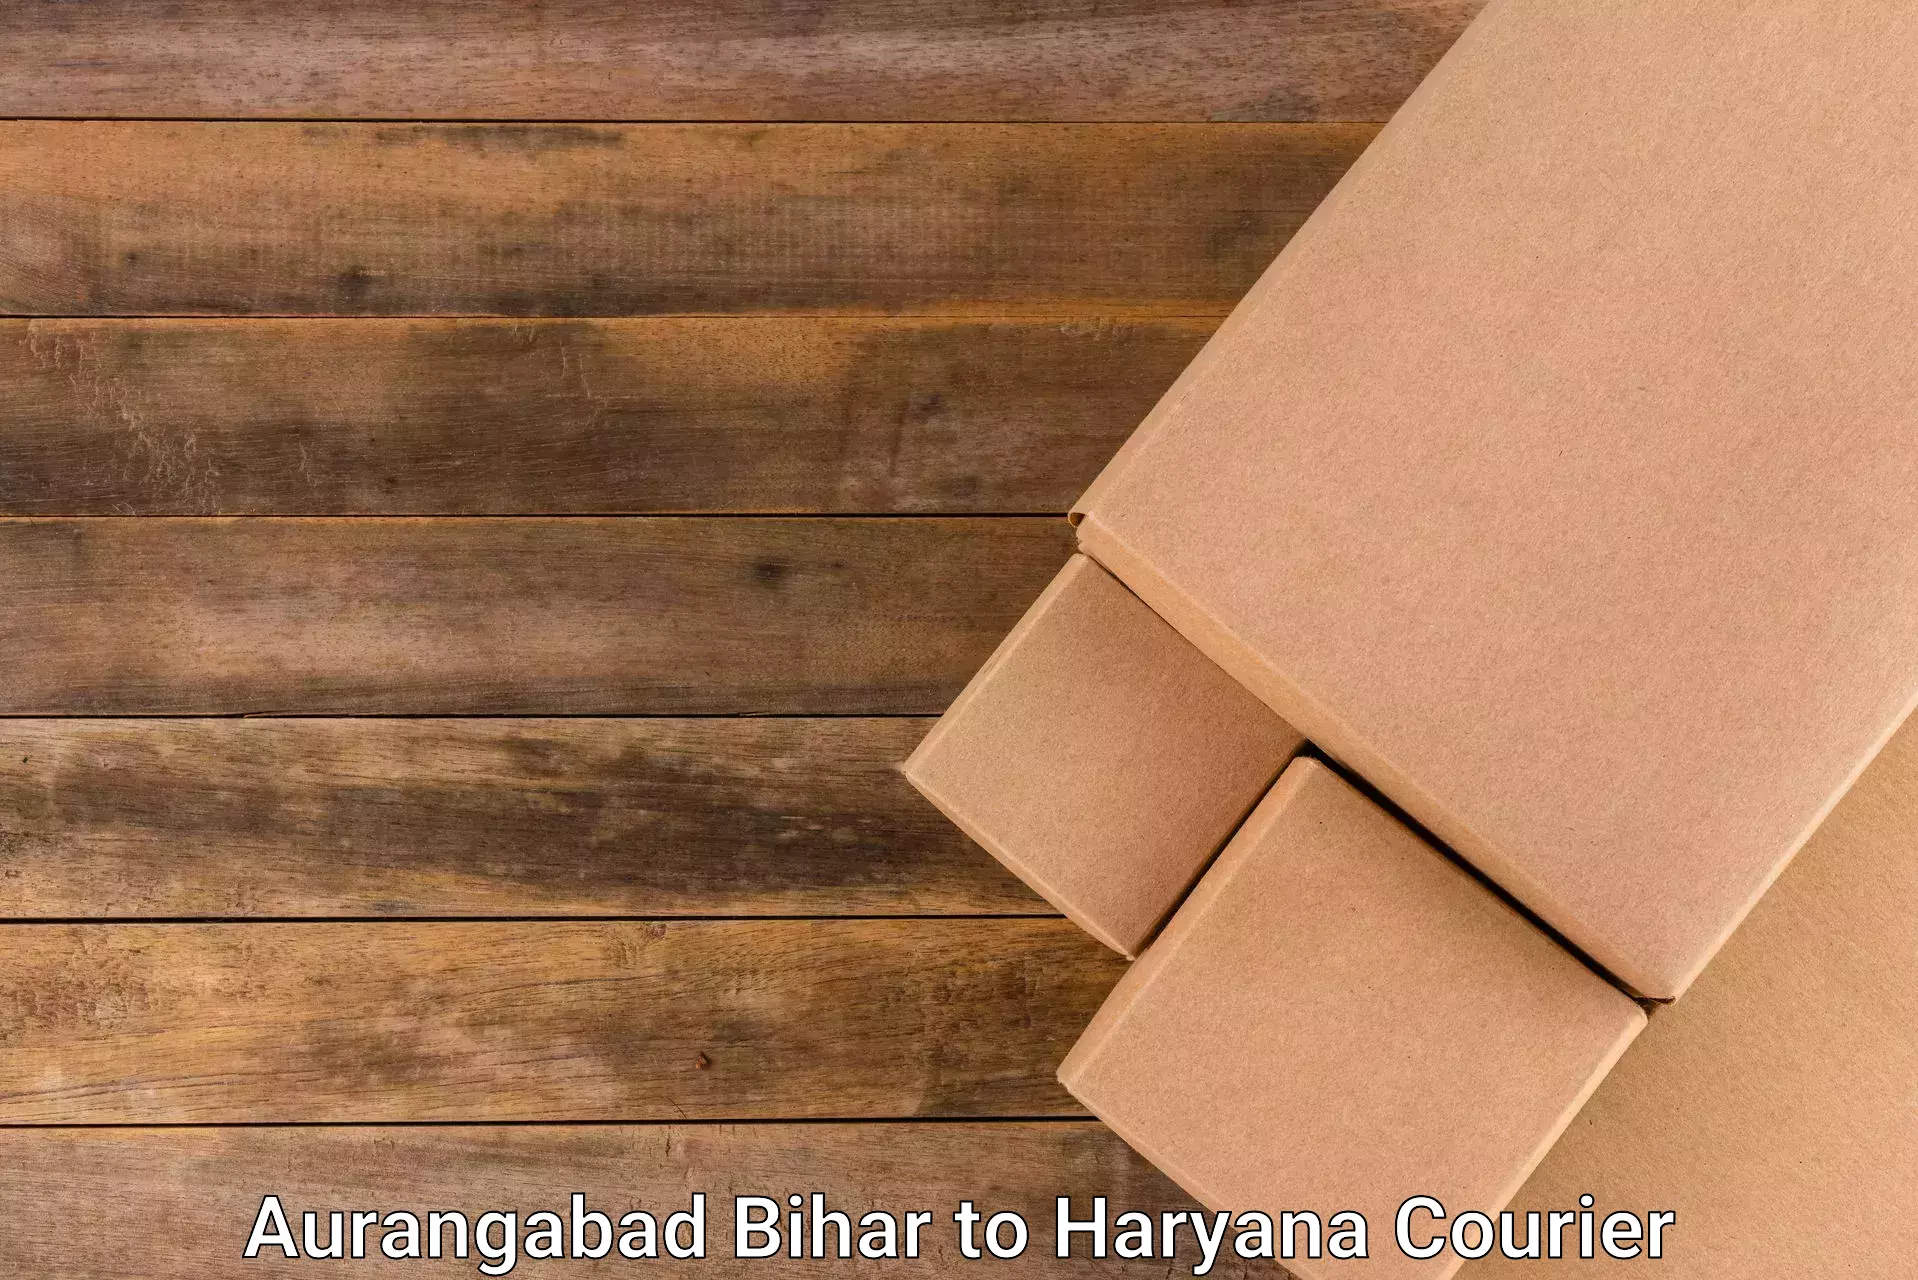 International courier networks Aurangabad Bihar to Rewari